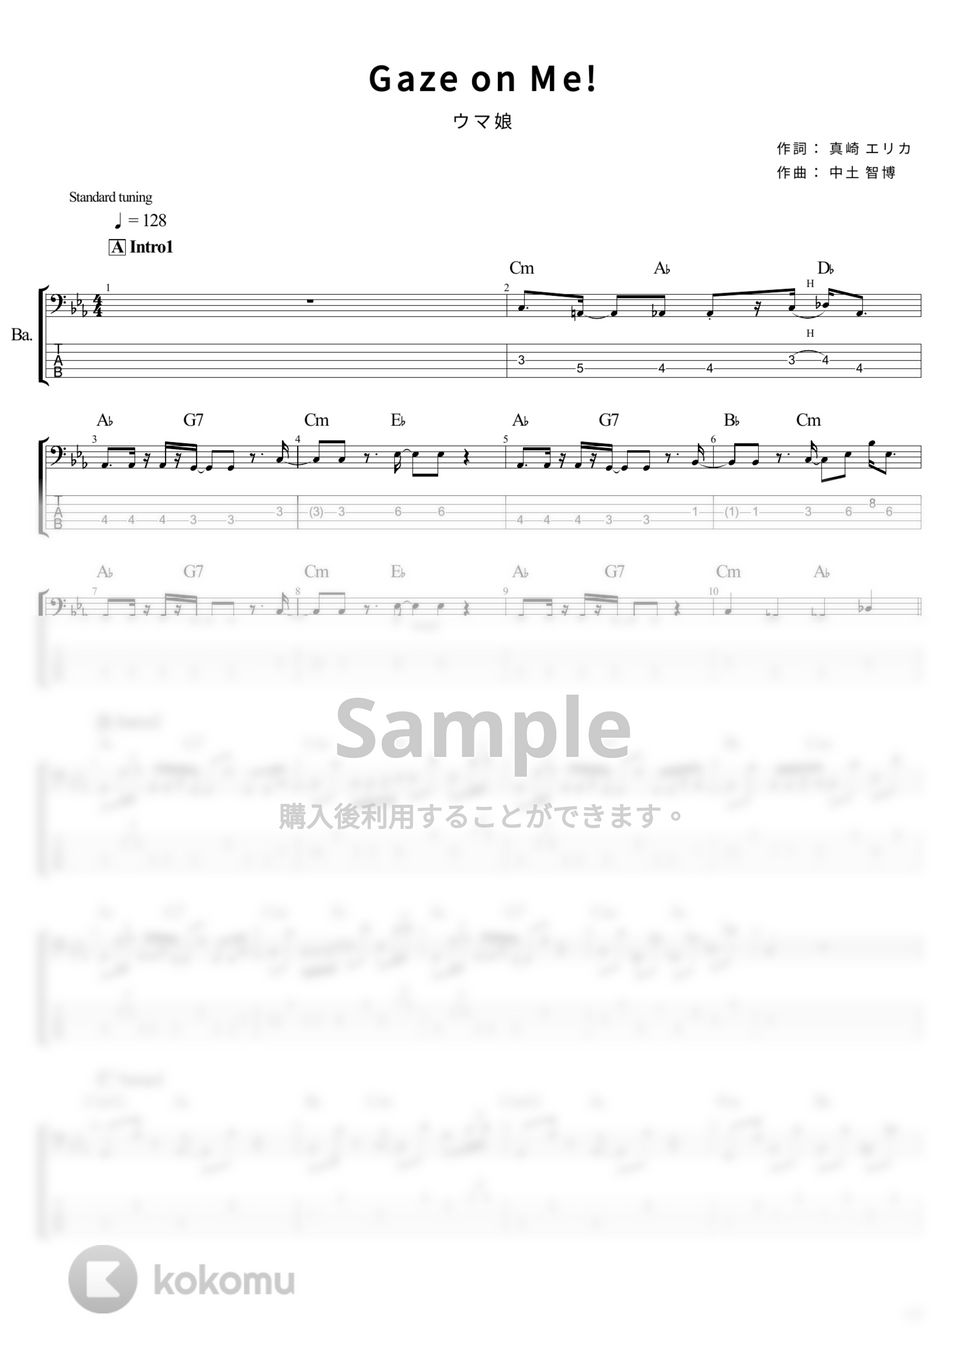 ウマ娘 - Gaze on Me! (Full size) (ベース Tab譜 5弦) by T's bass score